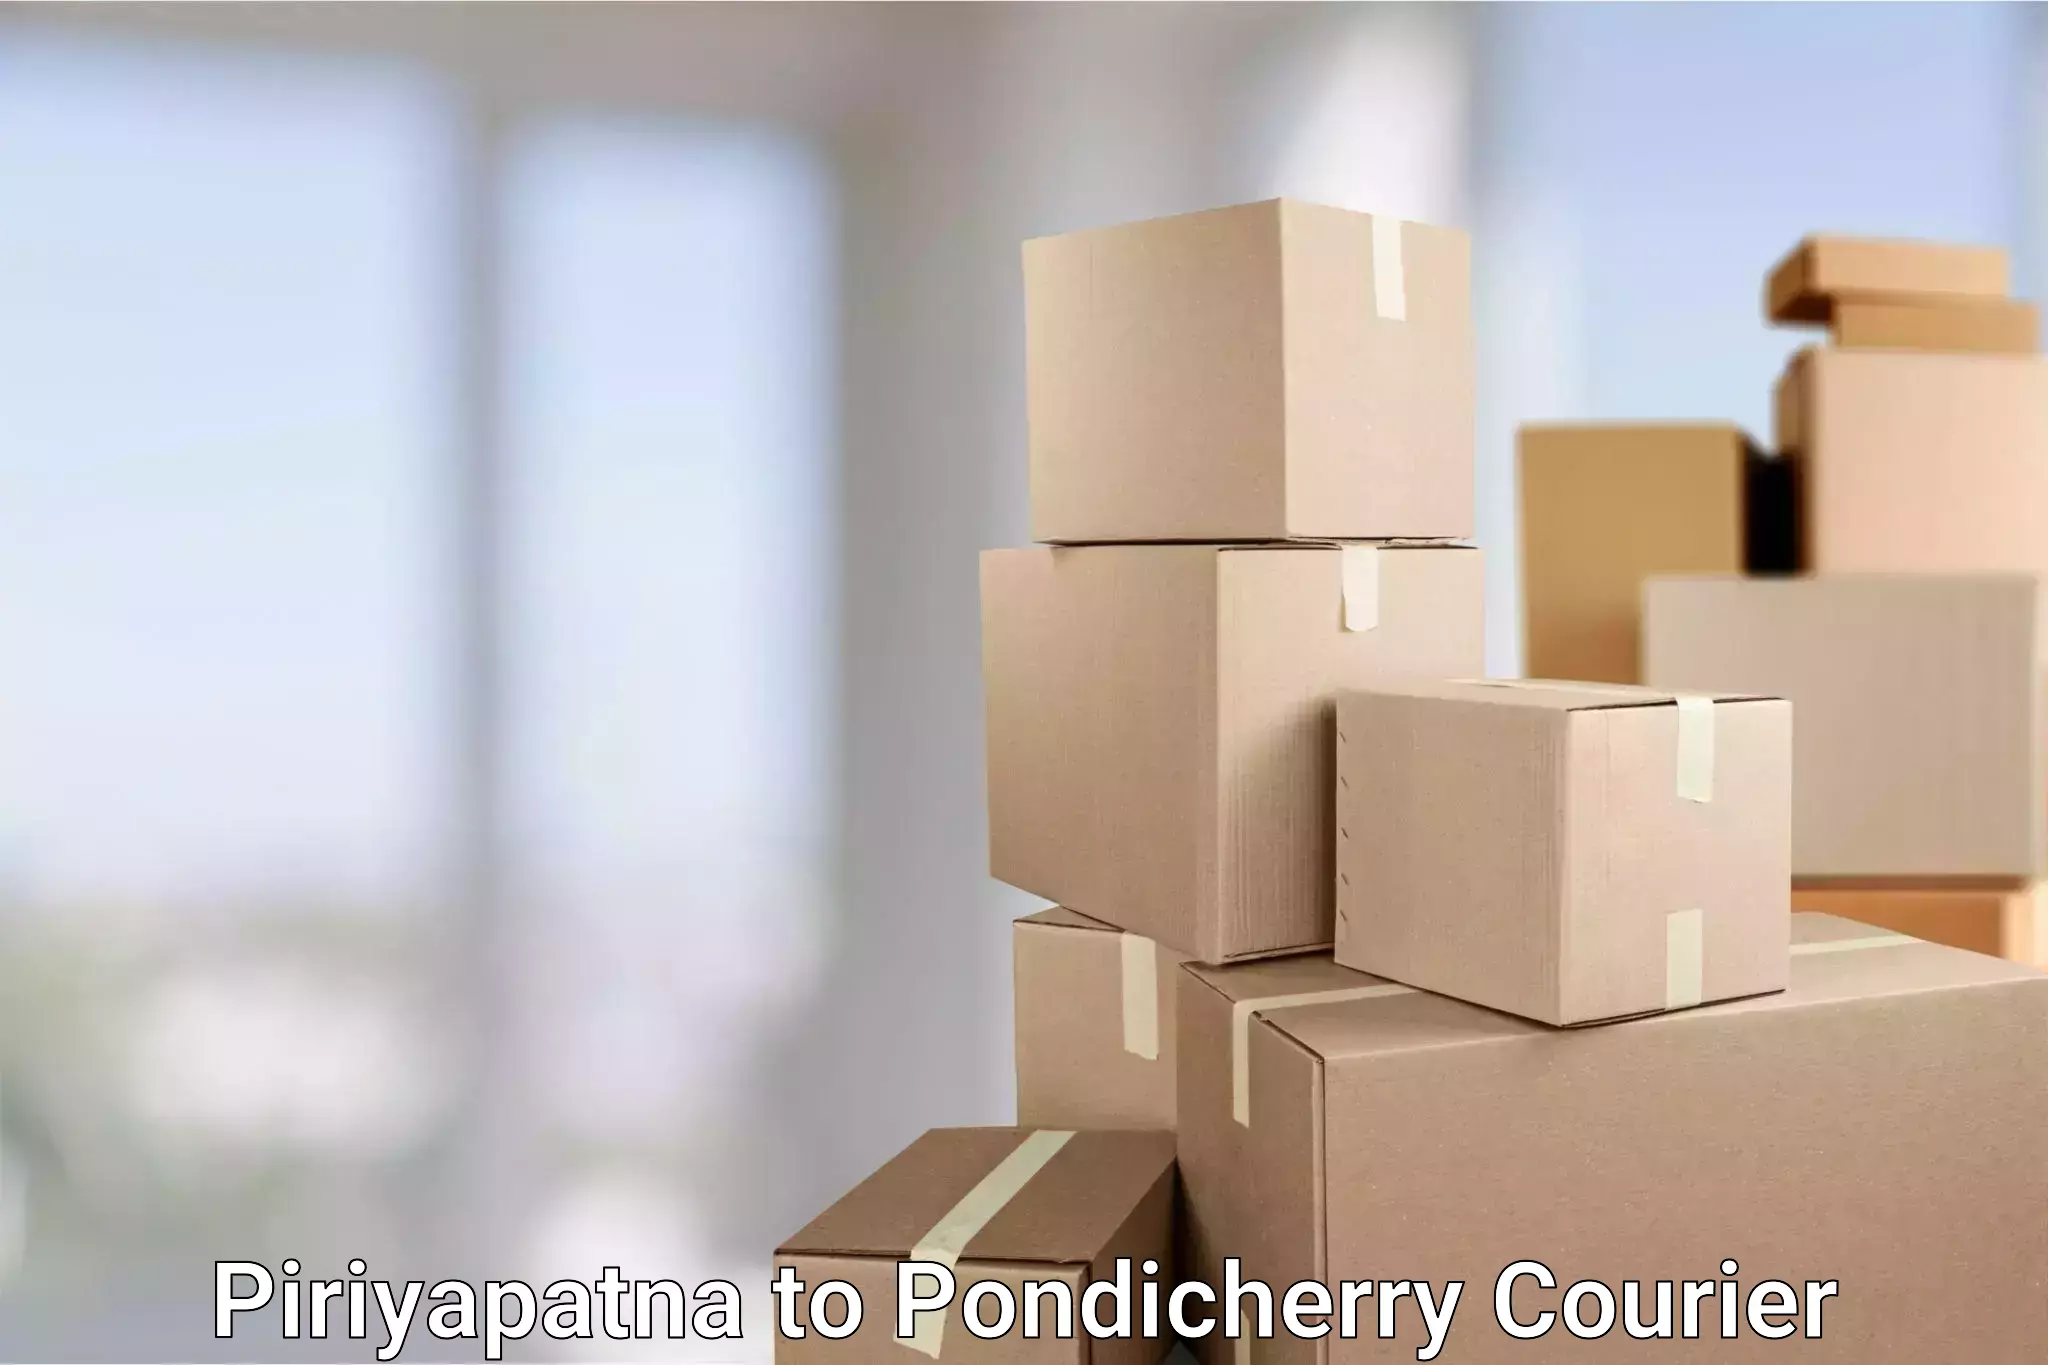 Same-day delivery solutions Piriyapatna to Pondicherry University